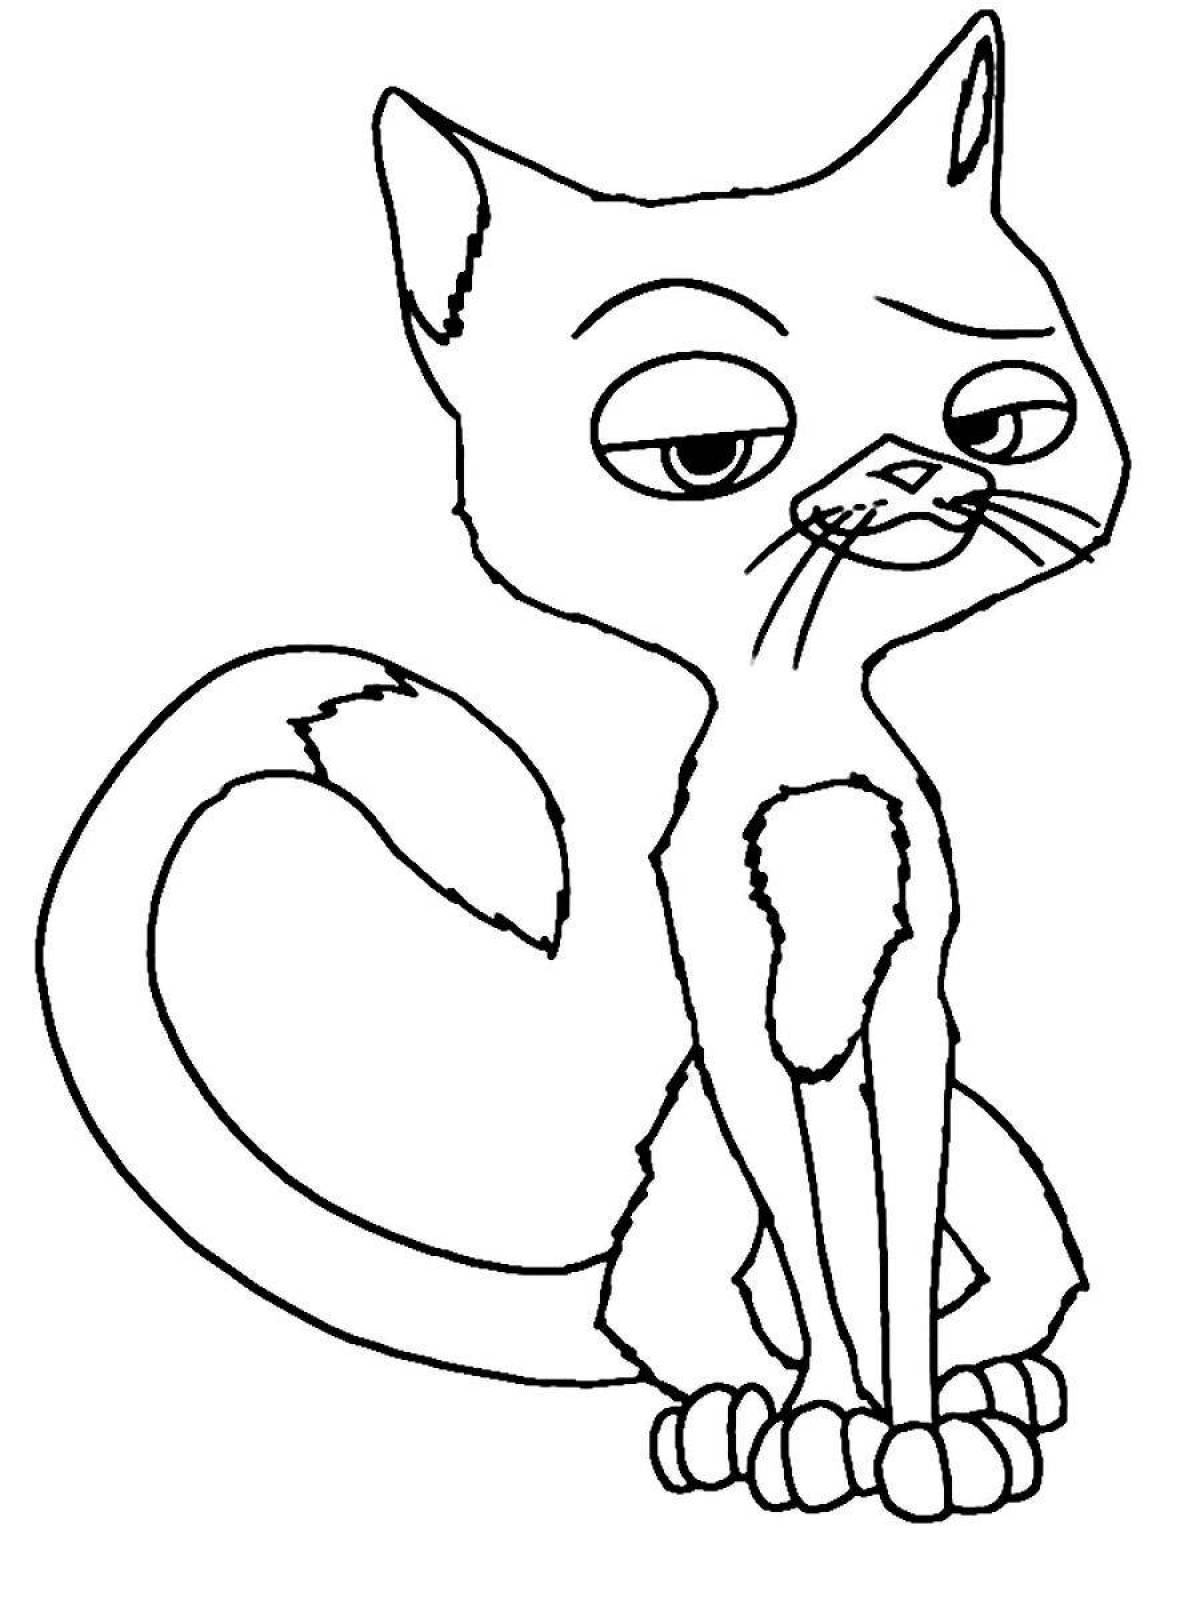 Экспрессивная раскраска мультяшный кот